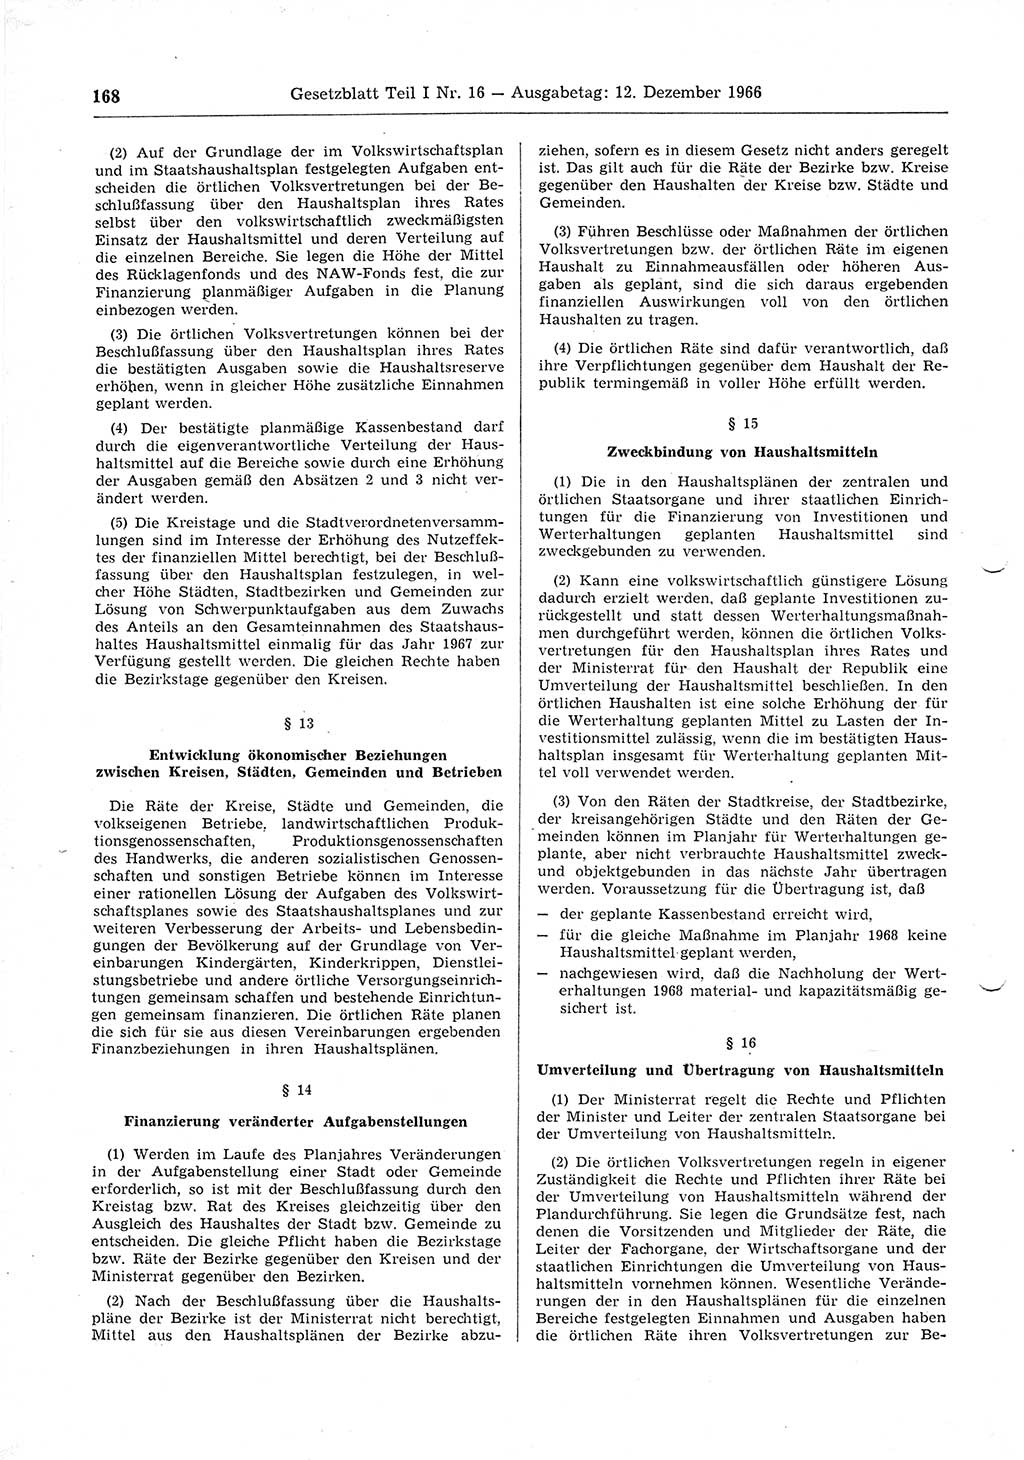 Gesetzblatt (GBl.) der Deutschen Demokratischen Republik (DDR) Teil Ⅰ 1966, Seite 168 (GBl. DDR Ⅰ 1966, S. 168)